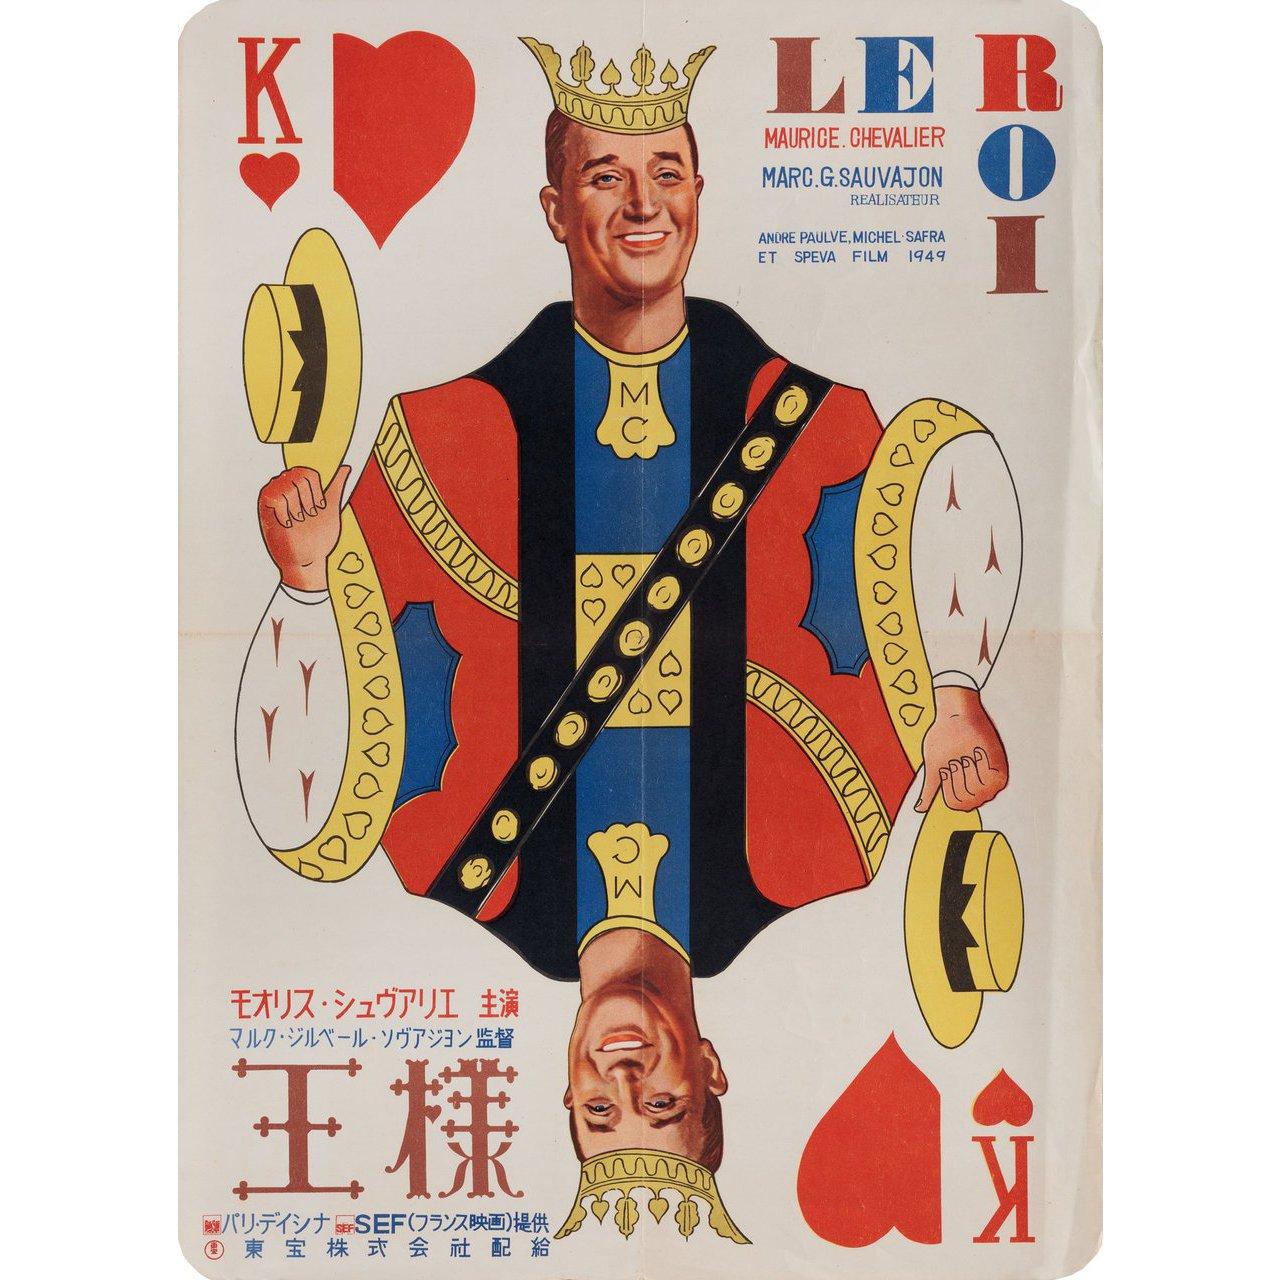 Affiche B3 japonaise originale de 1949 pour le film Une affaire royale (Le roi) réalisé par Marc-Gilbert Sauvajon avec Maurice Chevalier / Annie Ducaux / Sophie Desmarets. Très bon état, plié. De nombreuses affiches originales ont été publiées